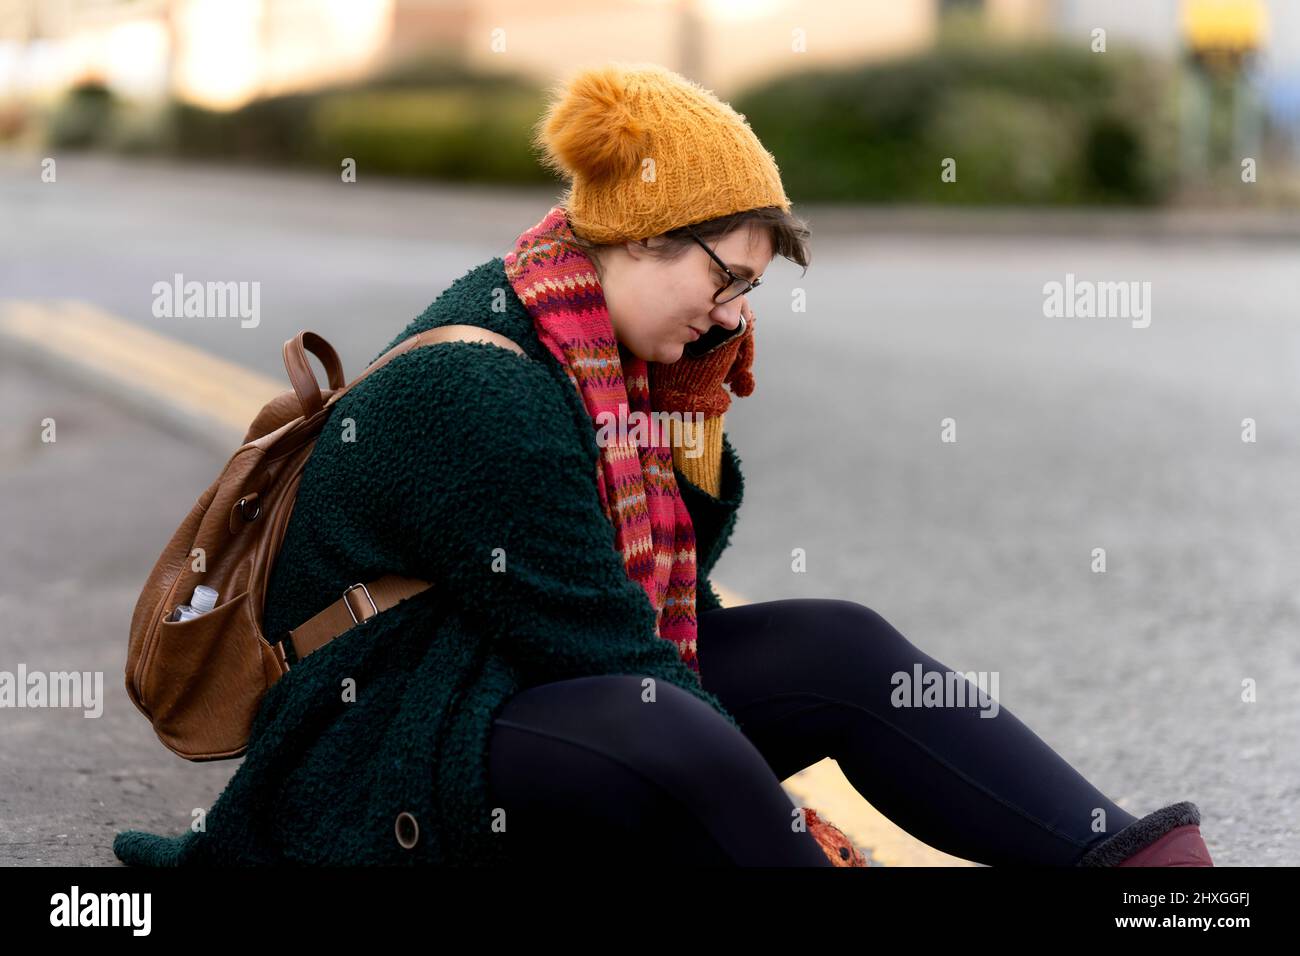 les jeunes femmes de 20-25 ans se sont assis sur le bord de la route des discussions sur le téléphone mobile, les femmes portent un chapeau et une écharpe en laine avec sac à dos sur le dos Banque D'Images